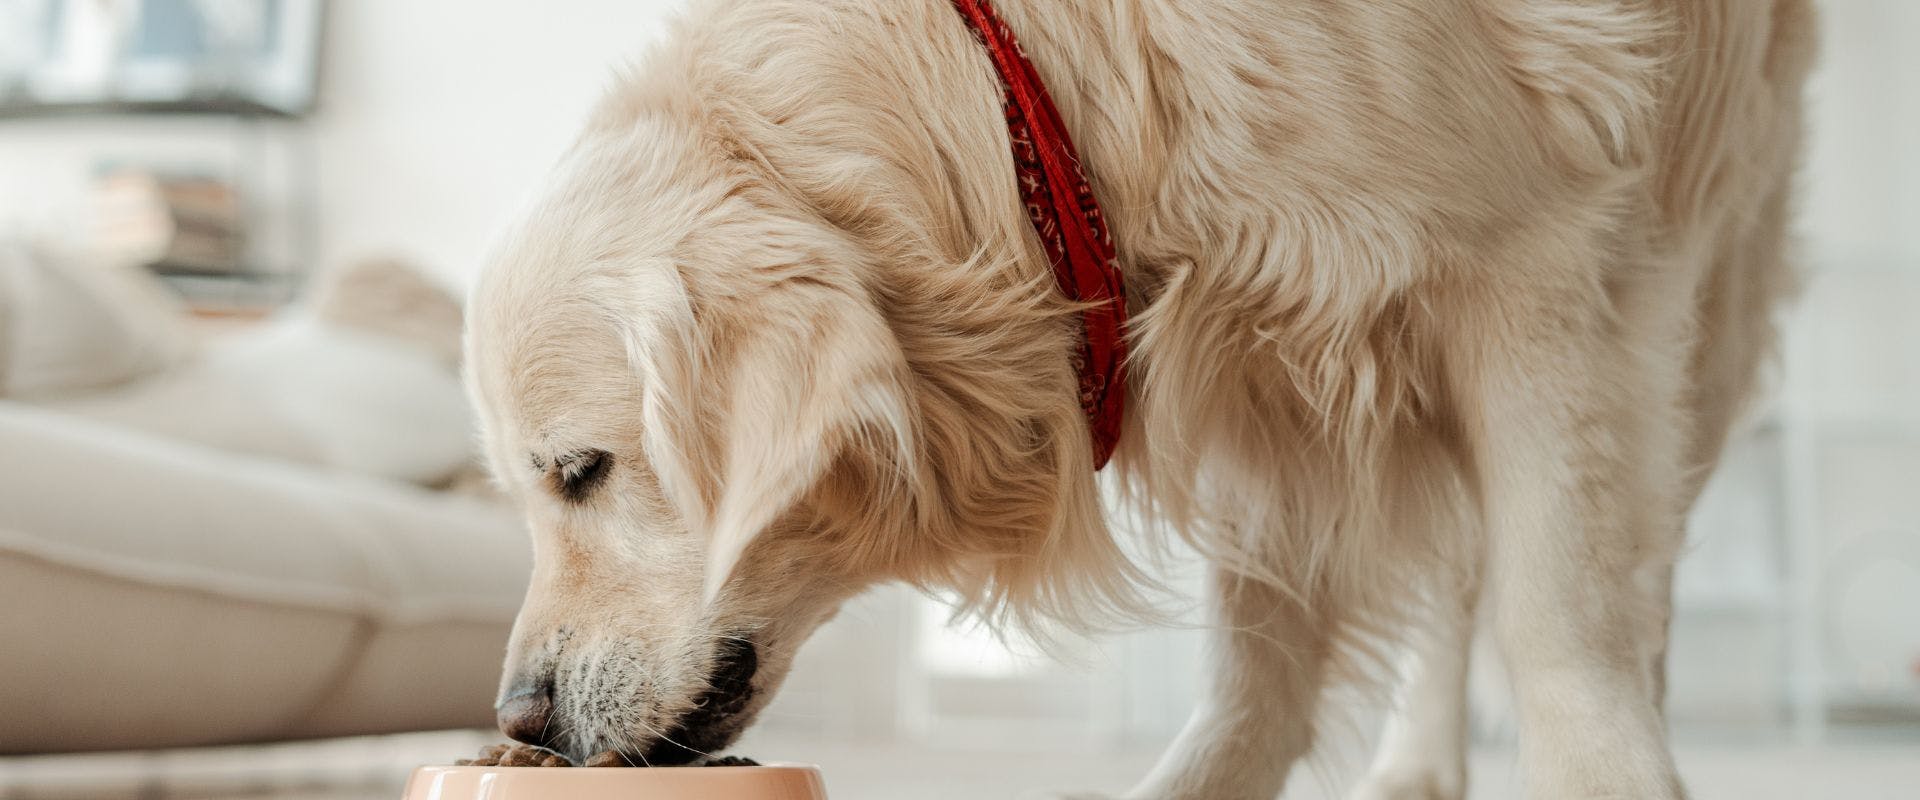 Golden Retriever dog eating from bowl